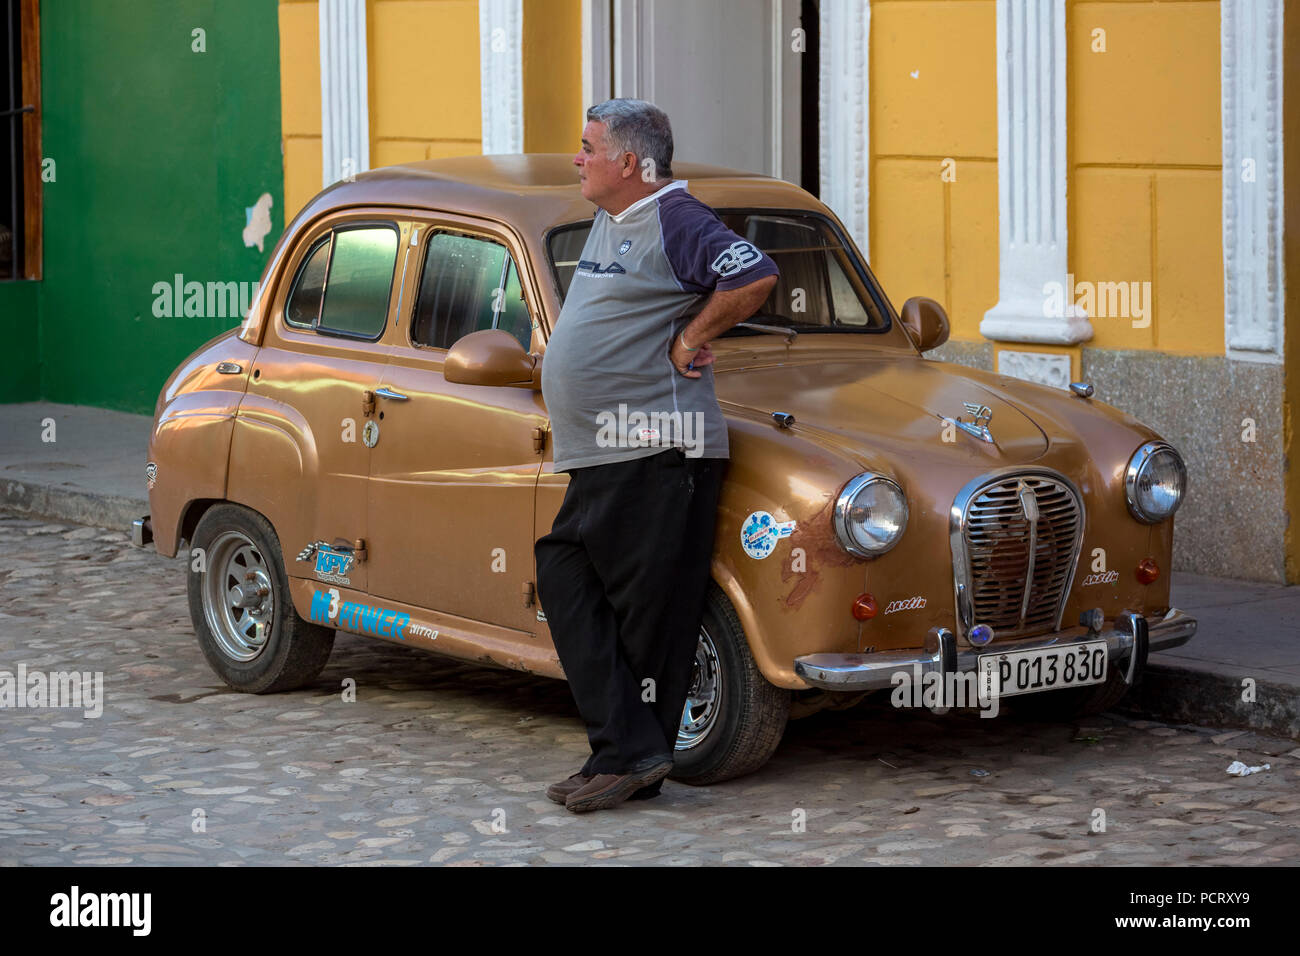 Fier propriétaire de voiture s'appuie contre sa petite voiture, Trinidad, Cuba, Holguín, Cuba Banque D'Images